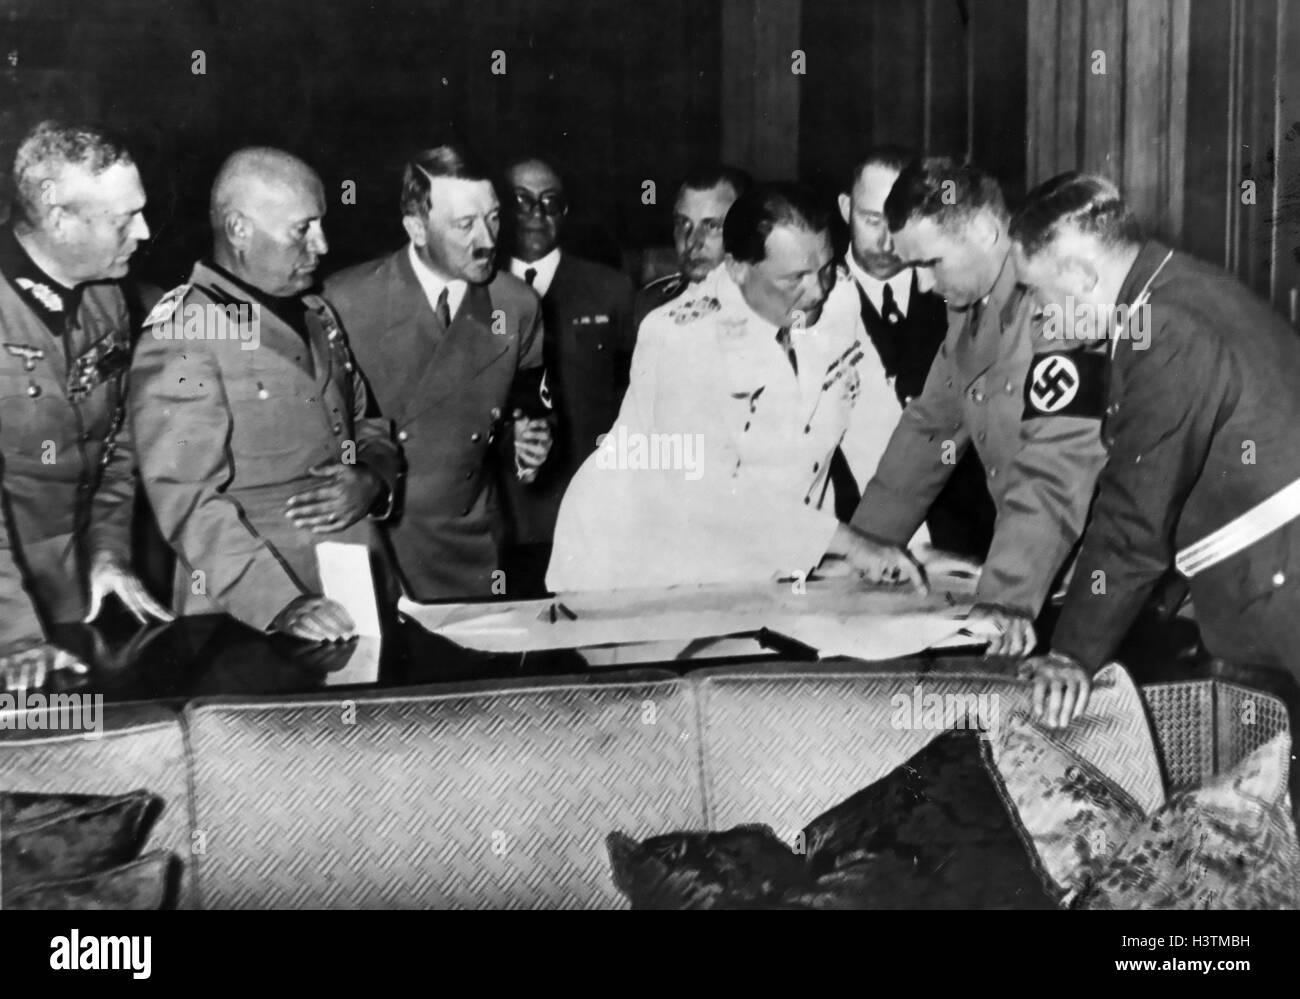 BENITO MUSSOLINI (1883-1945) deuxième de gauche à côté d'Adolf Hitler. Rudolf Hess (avec brassard) et Herman Goering (en uniforme blanc) consulter une carte. À propos de 1938. Banque D'Images